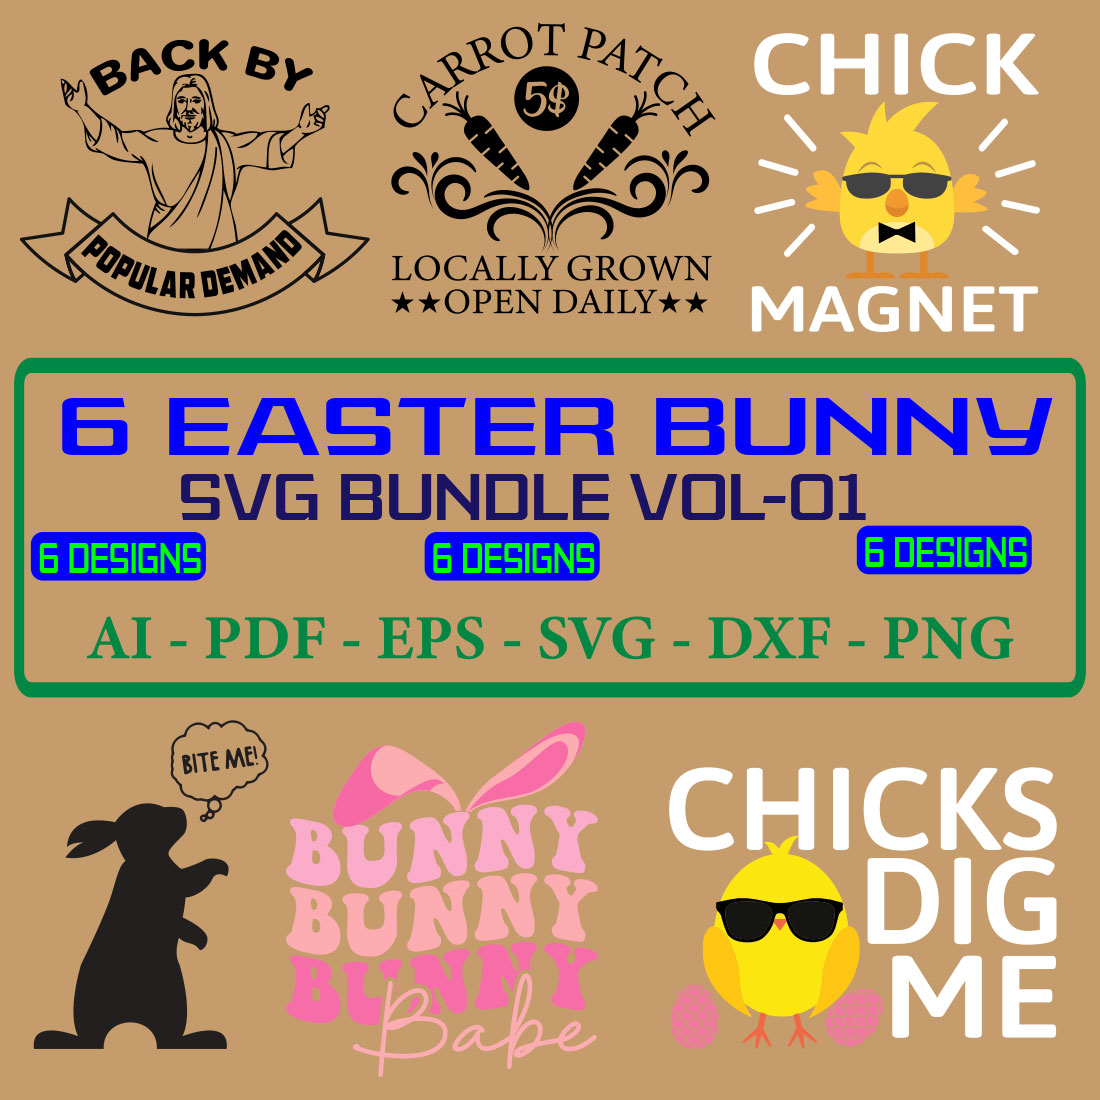 6 Easter Bunny SVG Bundle Vol 01 cover image.